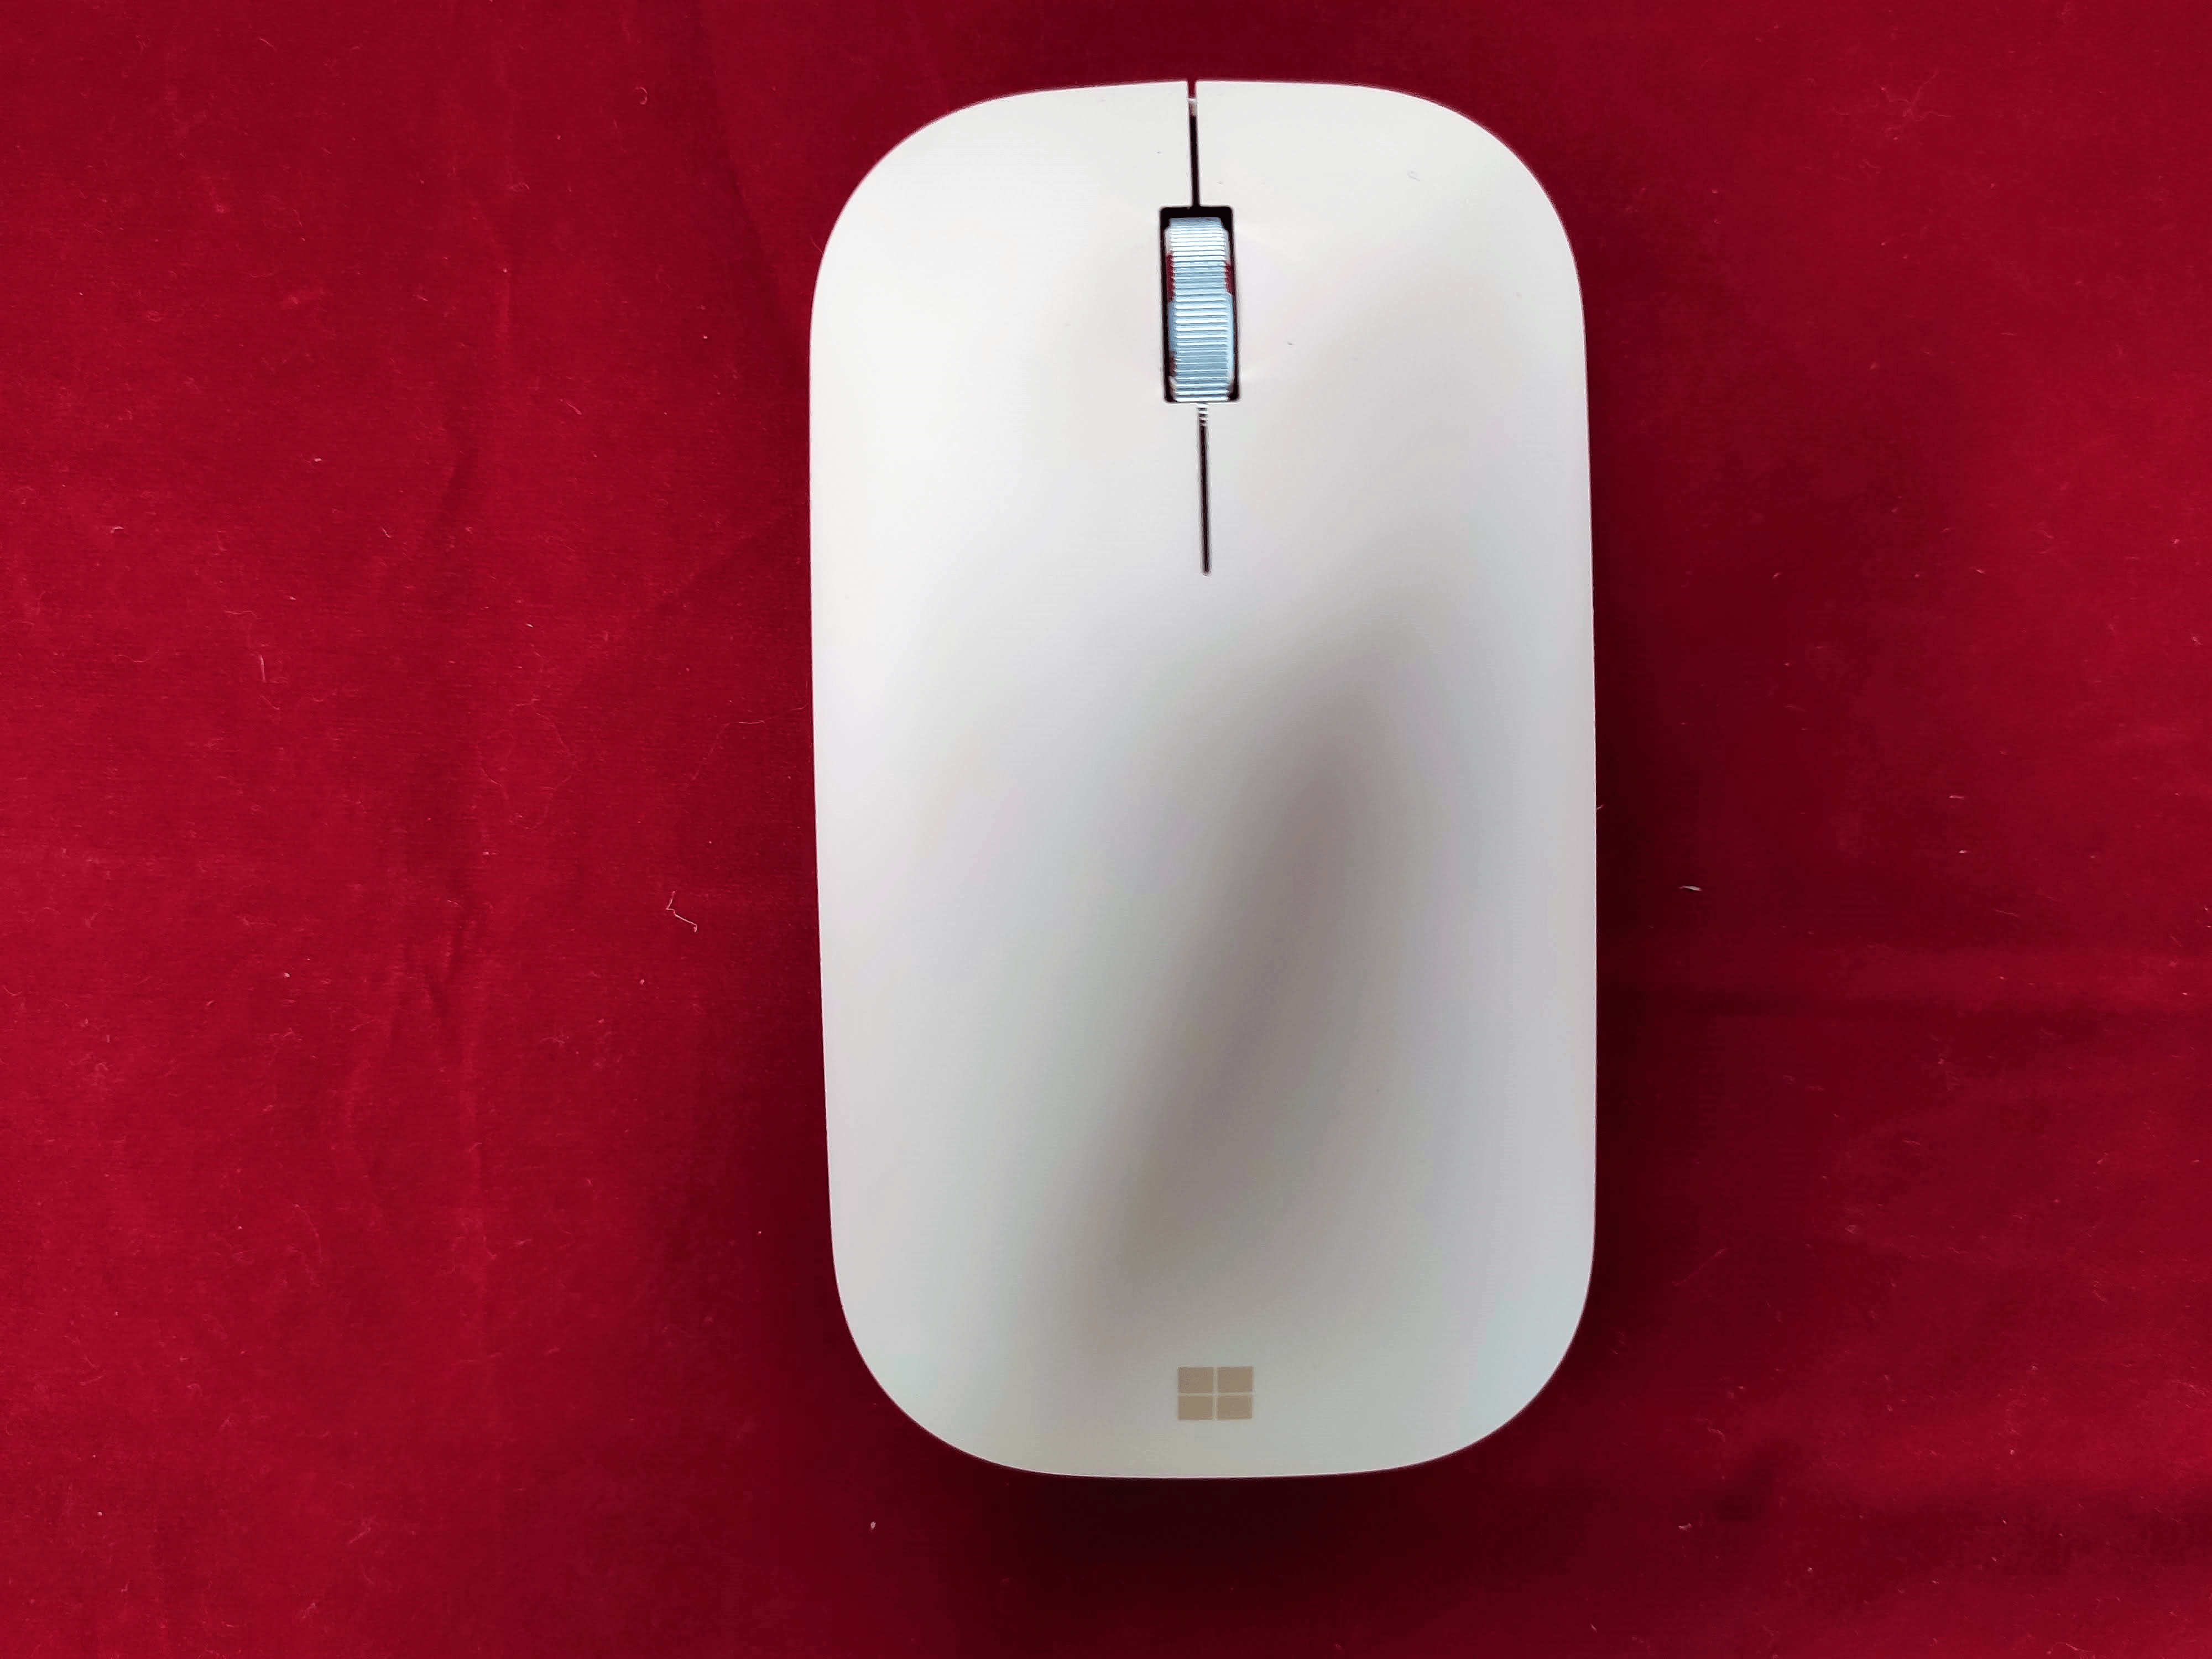 小ぶりで持ち運びに便利な Surface モバイル マウス レビュー Wpteq